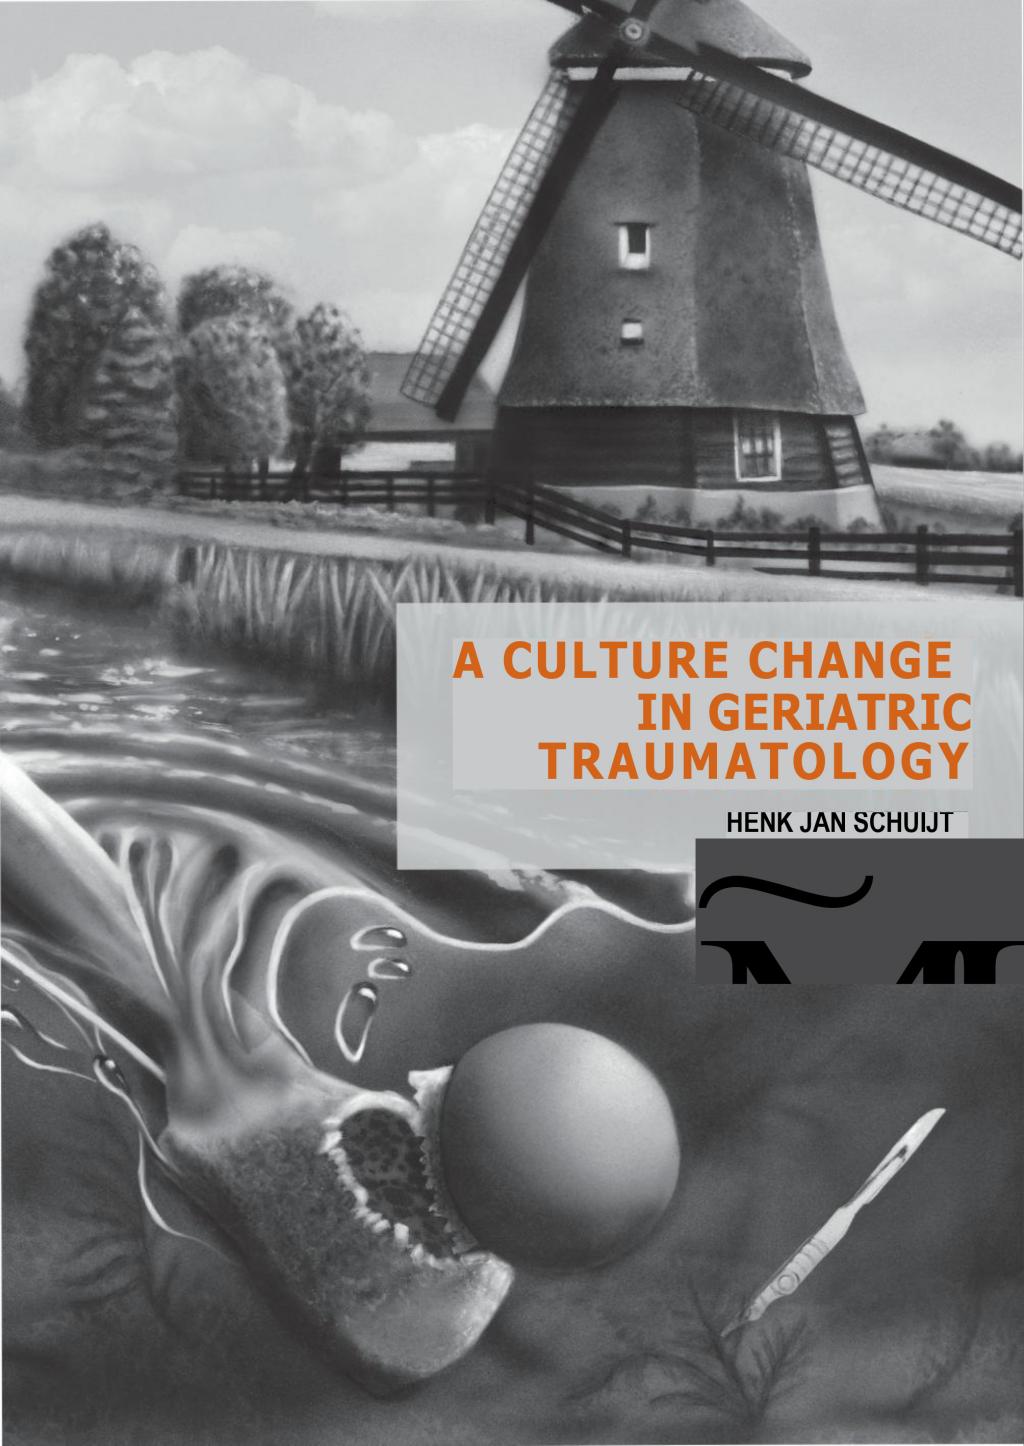 Cover van "A Culture change in geriatric traumatology" door Henk Jan Schuijt.